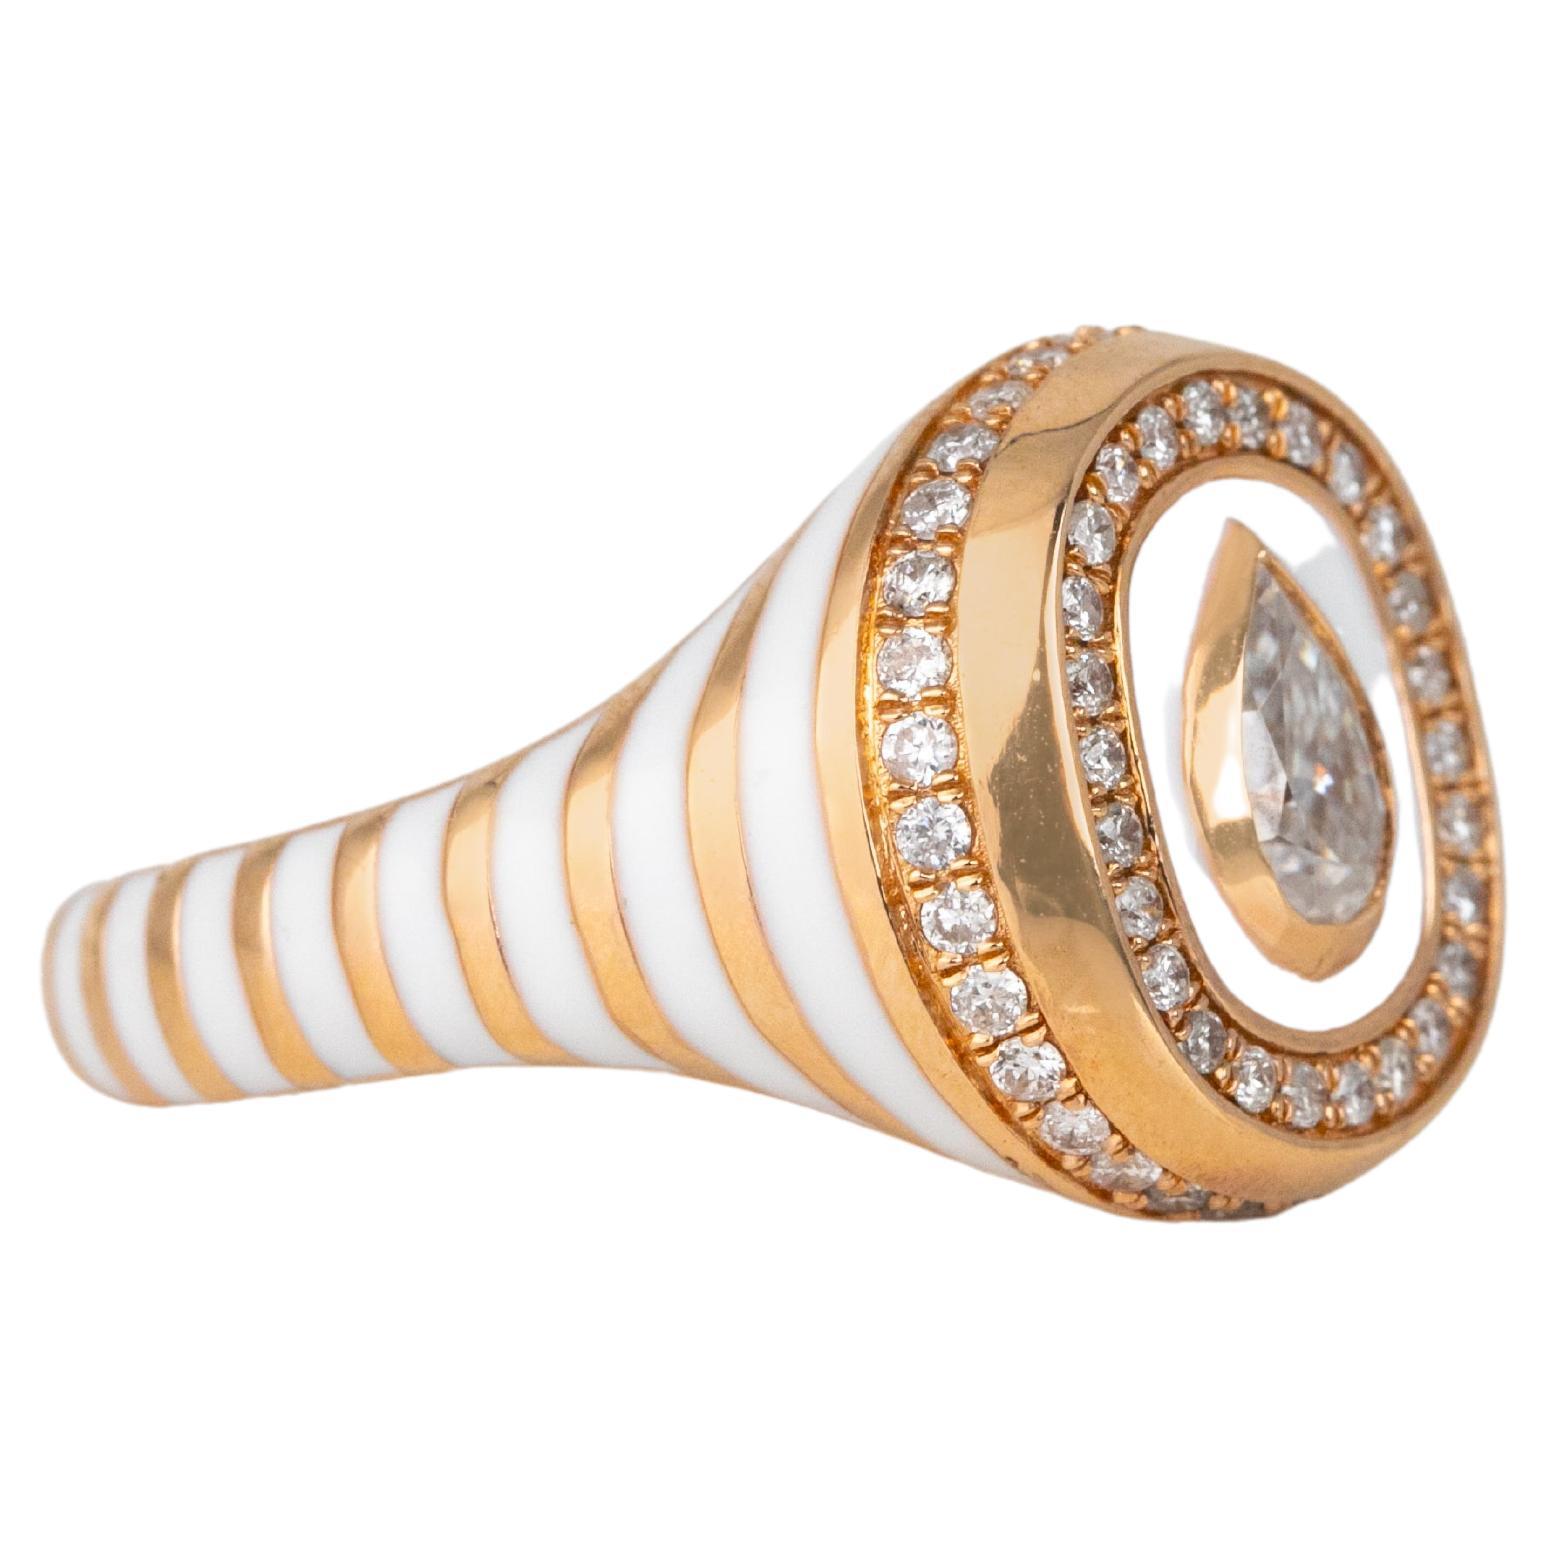 For Sale:  14K Gold 0.50 Ct Moissanite & Diamond Enameled Cocktail Ring, Chevalier Ring 2